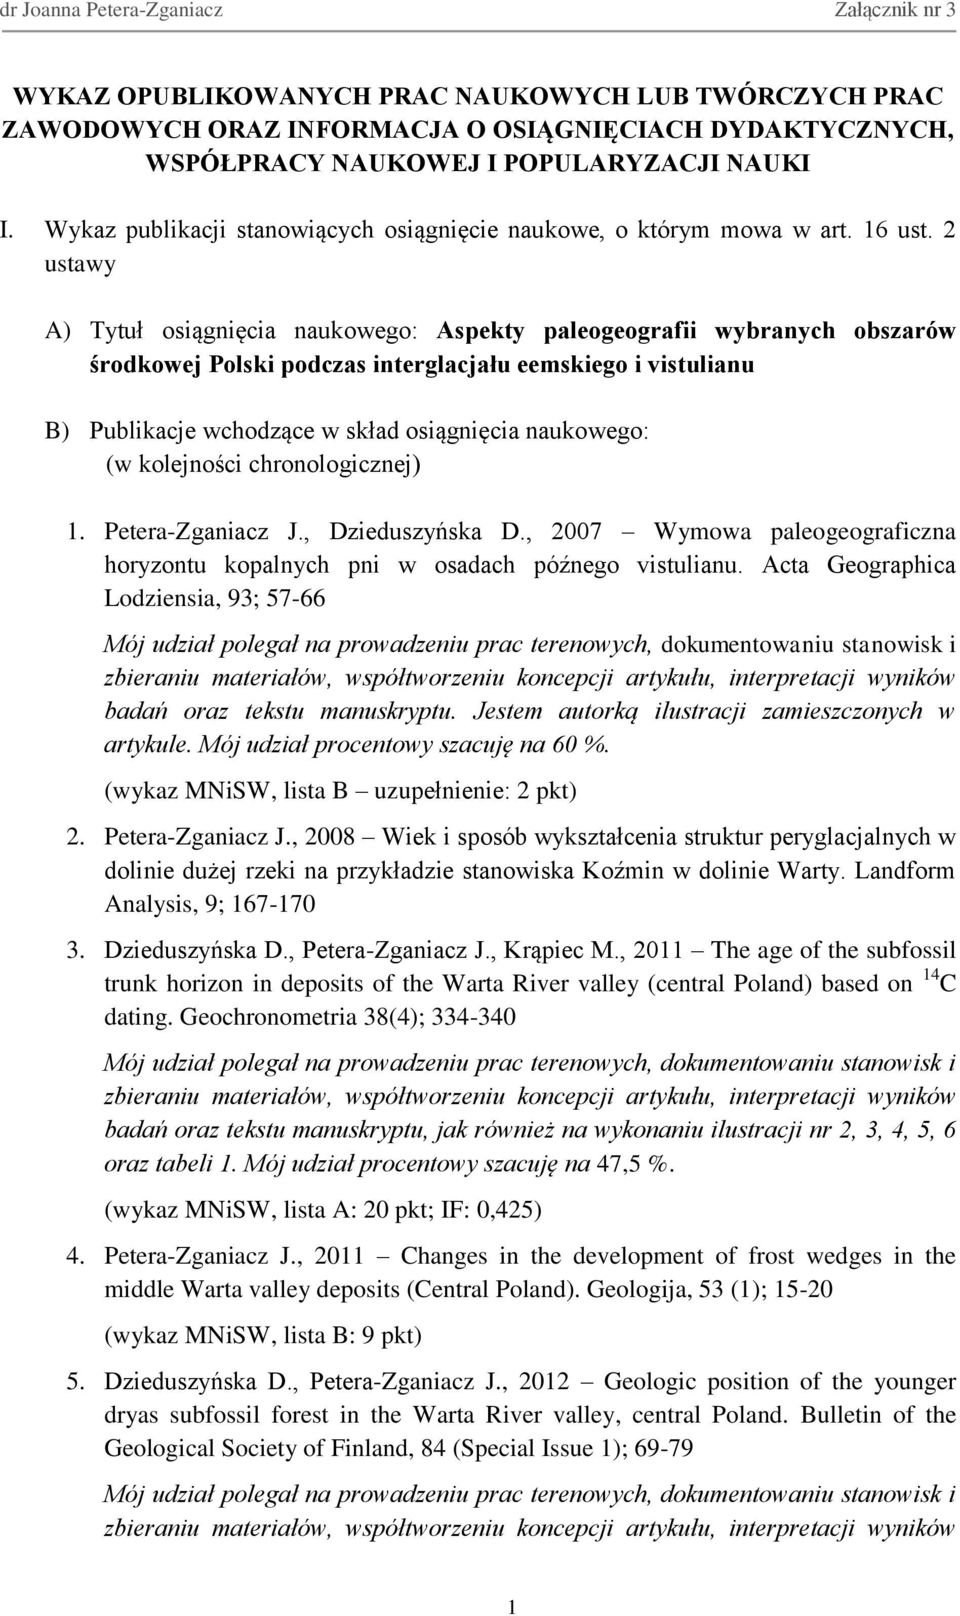 2 ustawy A) Tytuł osiągnięcia naukowego: Aspekty paleogeografii wybranych obszarów środkowej Polski podczas interglacjału eemskiego i vistulianu B) Publikacje wchodzące w skład osiągnięcia naukowego: